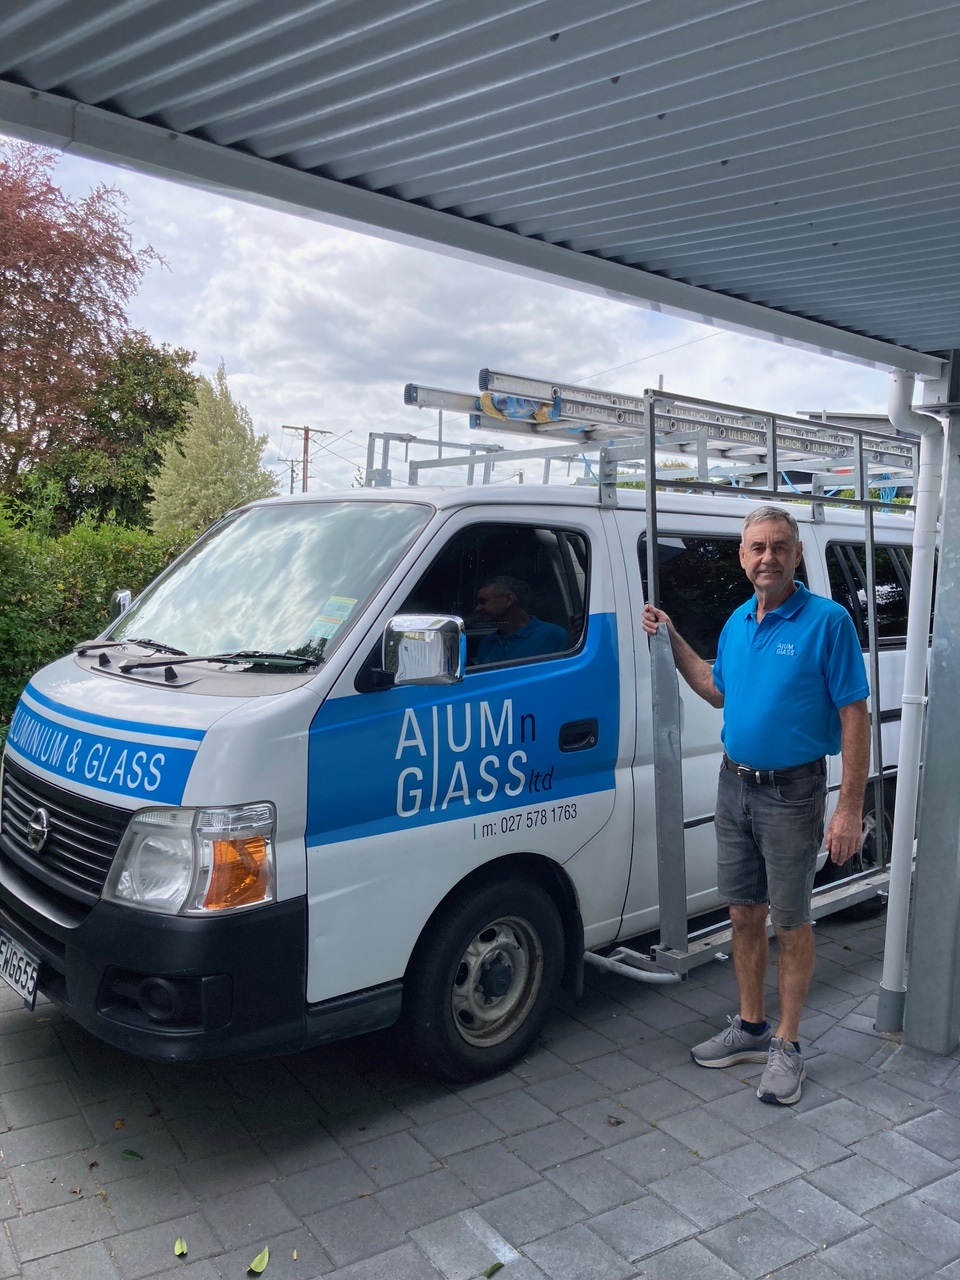 Alumn Glass Graeme with his van